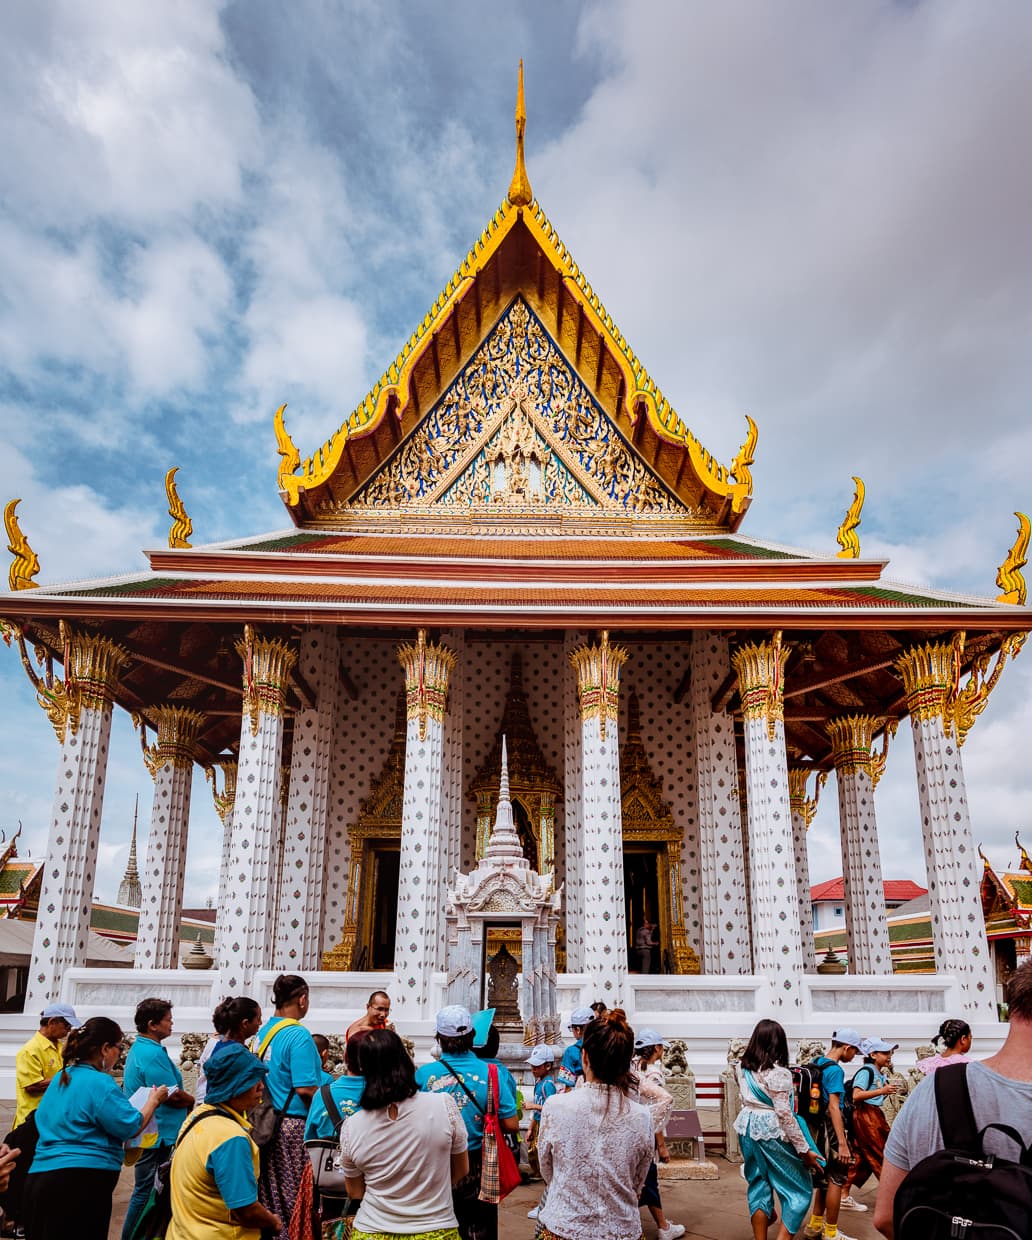 The entrance to the Ordination Hall at Bangkok, Thailand's Wat Arun.